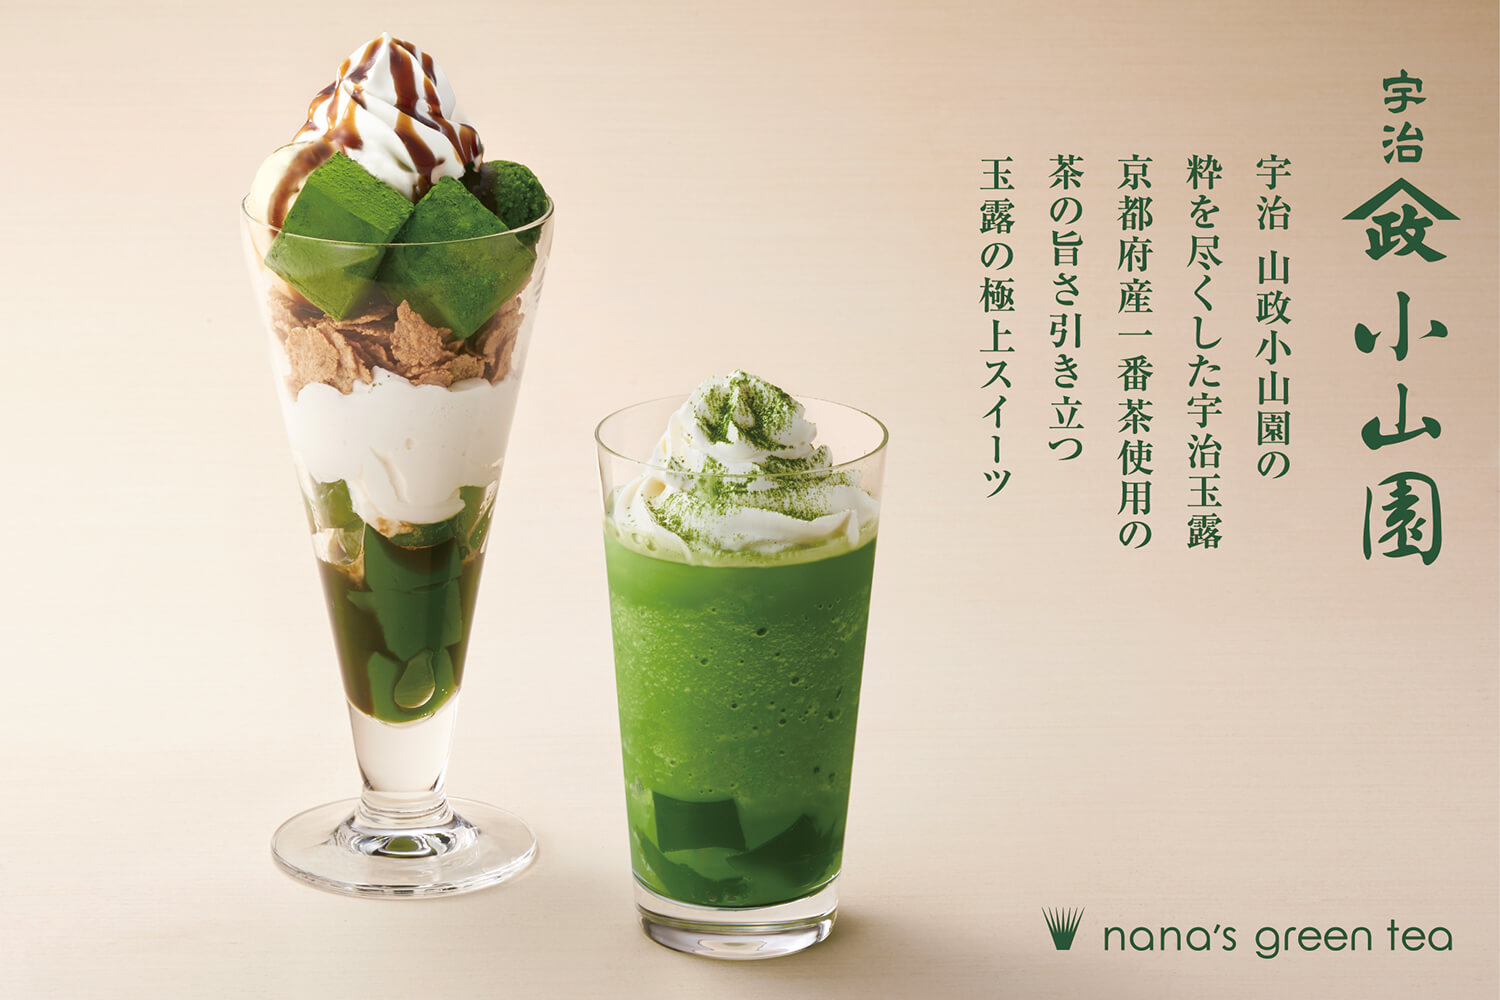 nana’s green tea dessert 和スイーツ 甜點